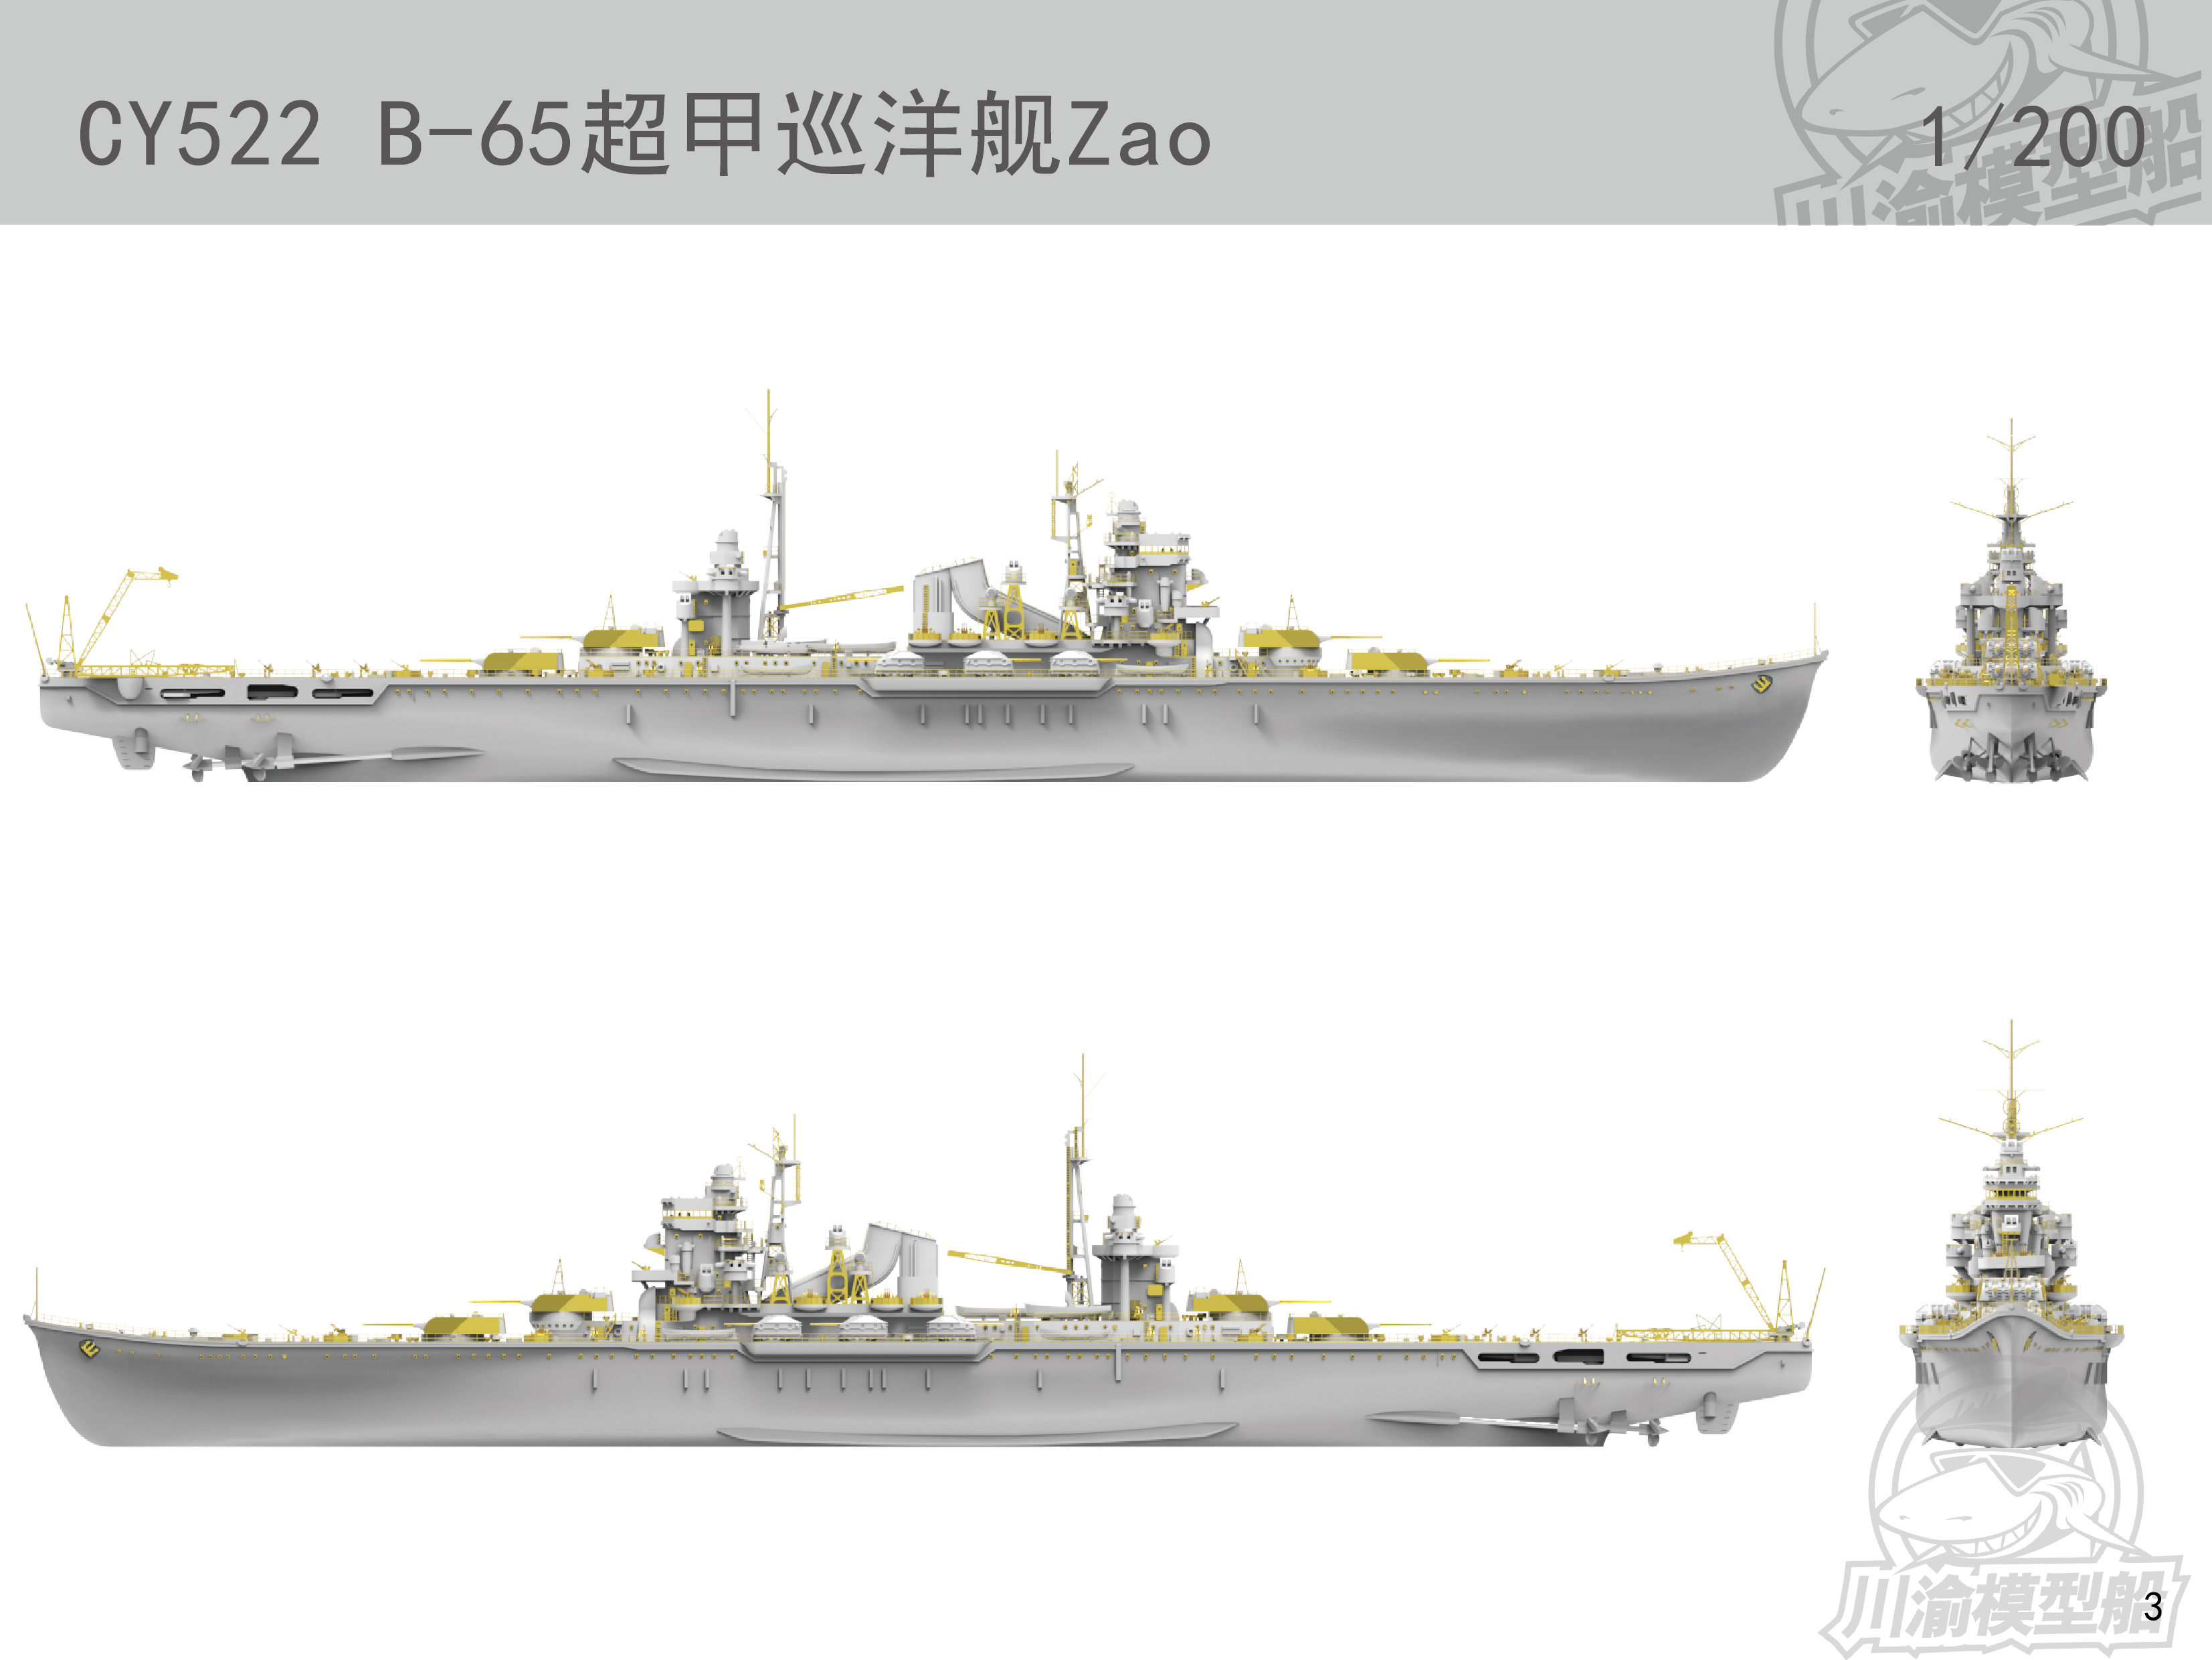 川渝发布1/200藏王级重型巡洋舰遥控模型套件